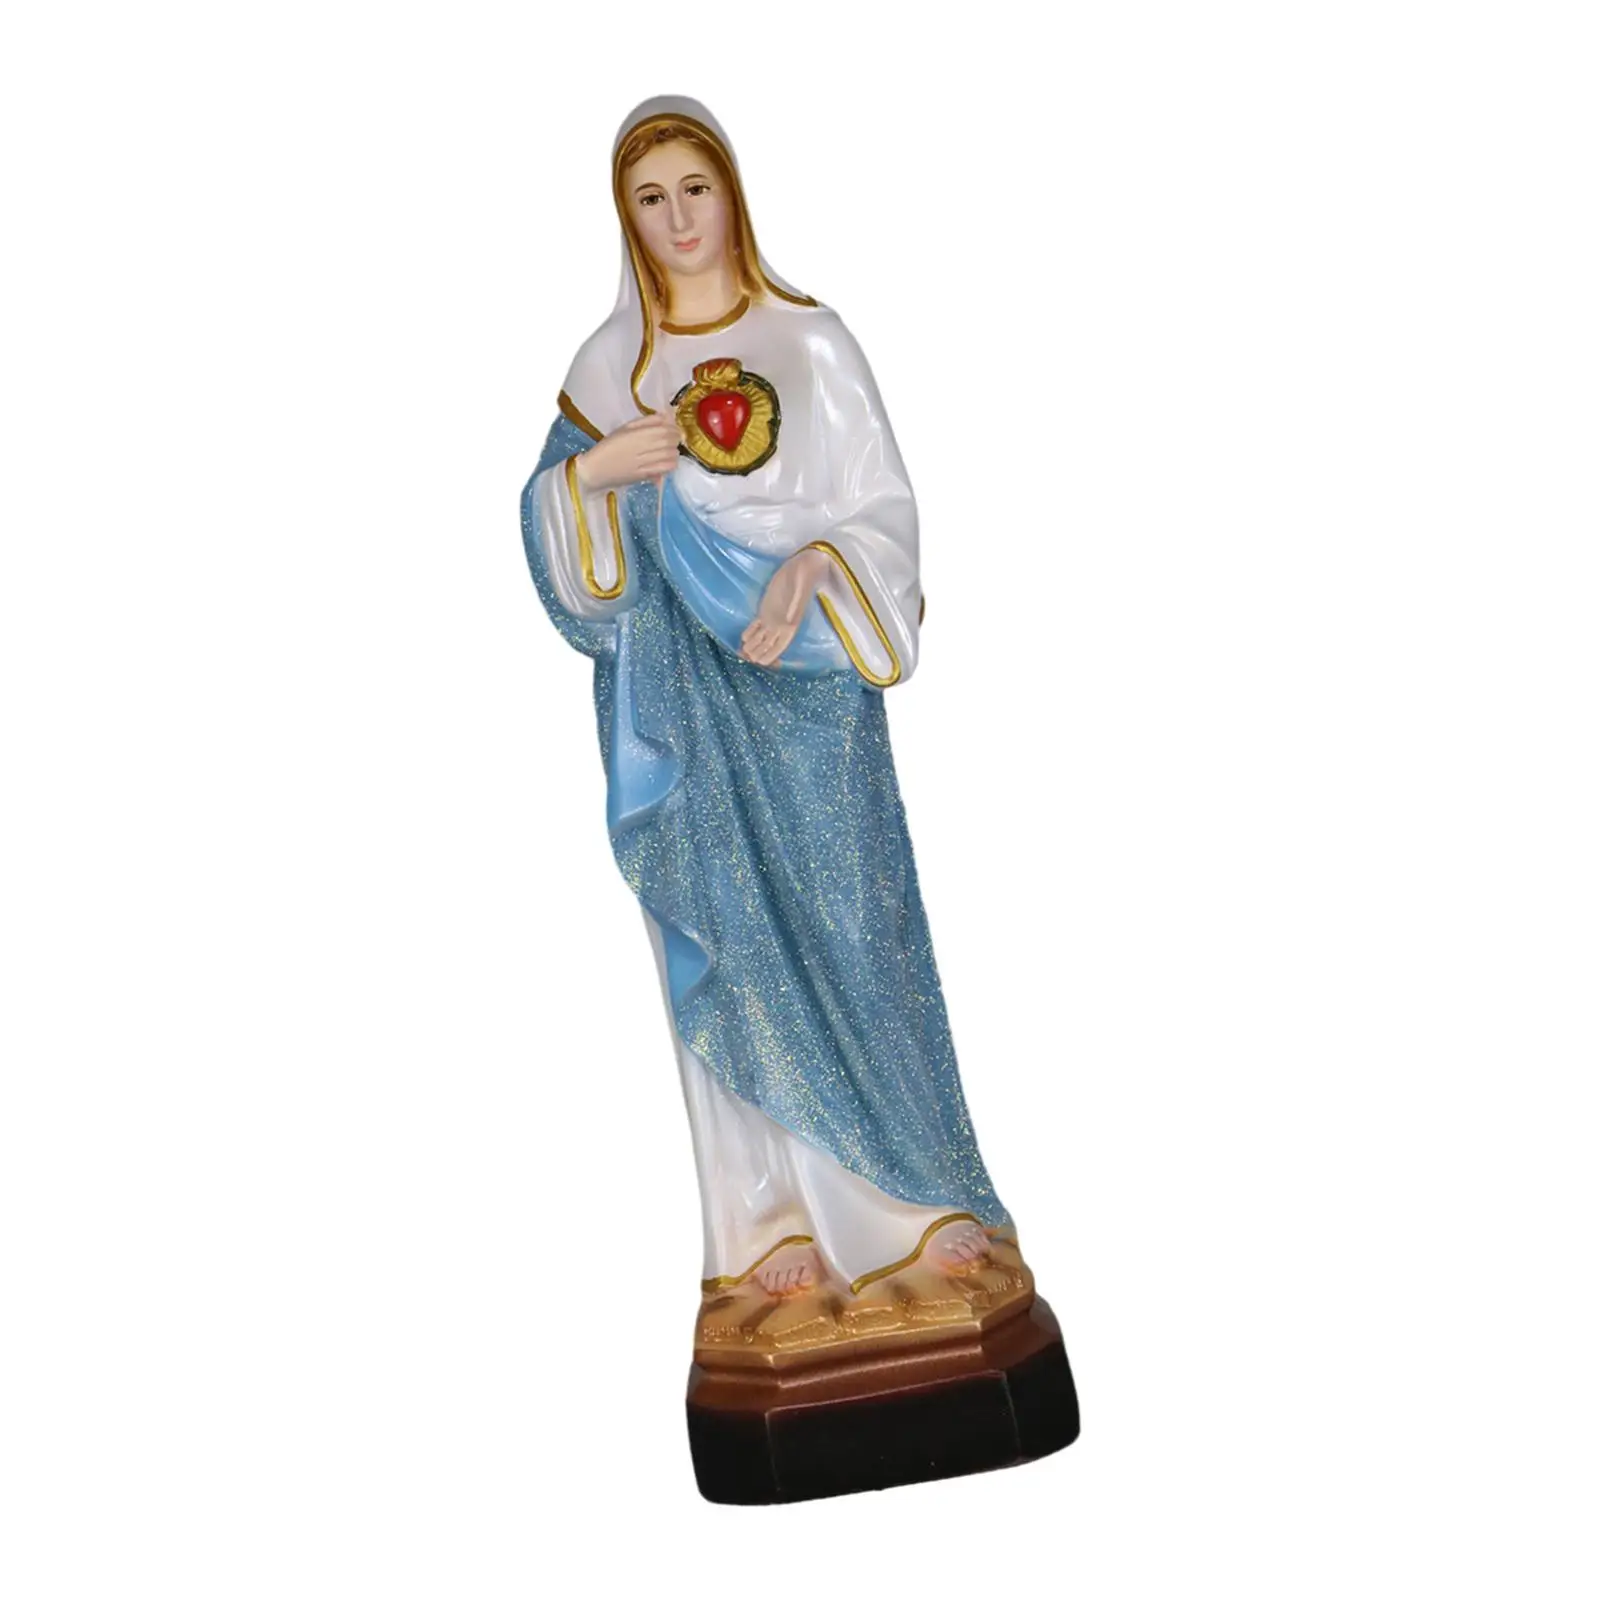 

Фигурка Марии из смолы, религиозные подарки, 13,78 дюйма, художественная фигурка, Священное Сердце Марии, фигурка для полки, гостиной, дома, офиса, церкви